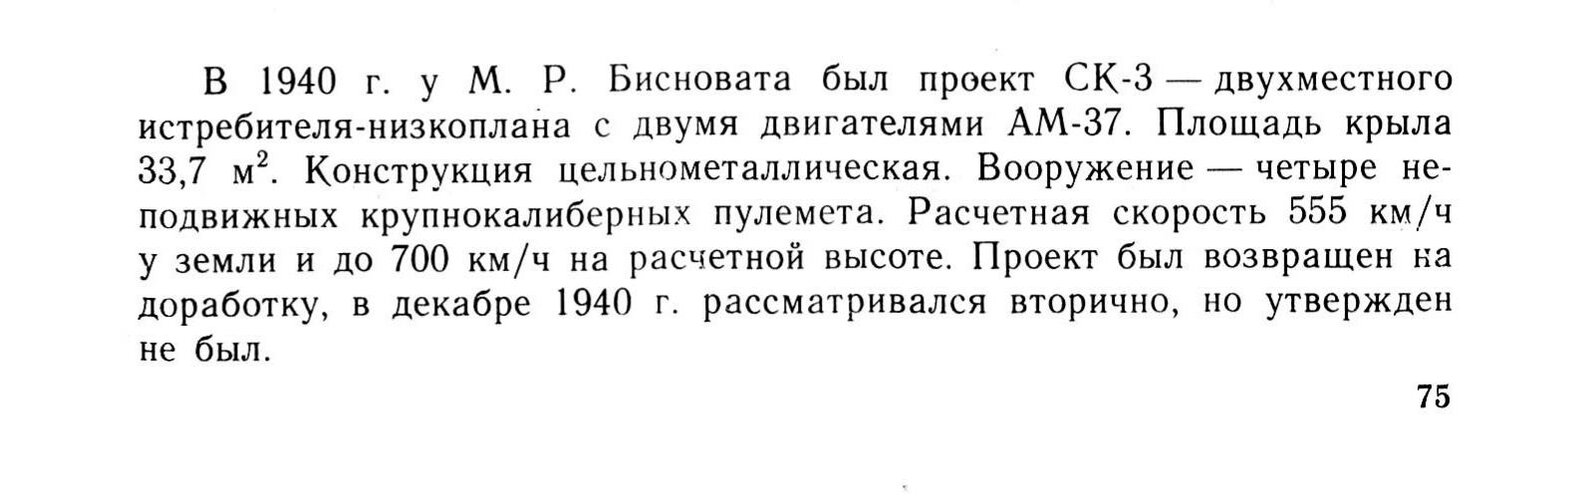 Shavrov_1938-1950_01.jpg